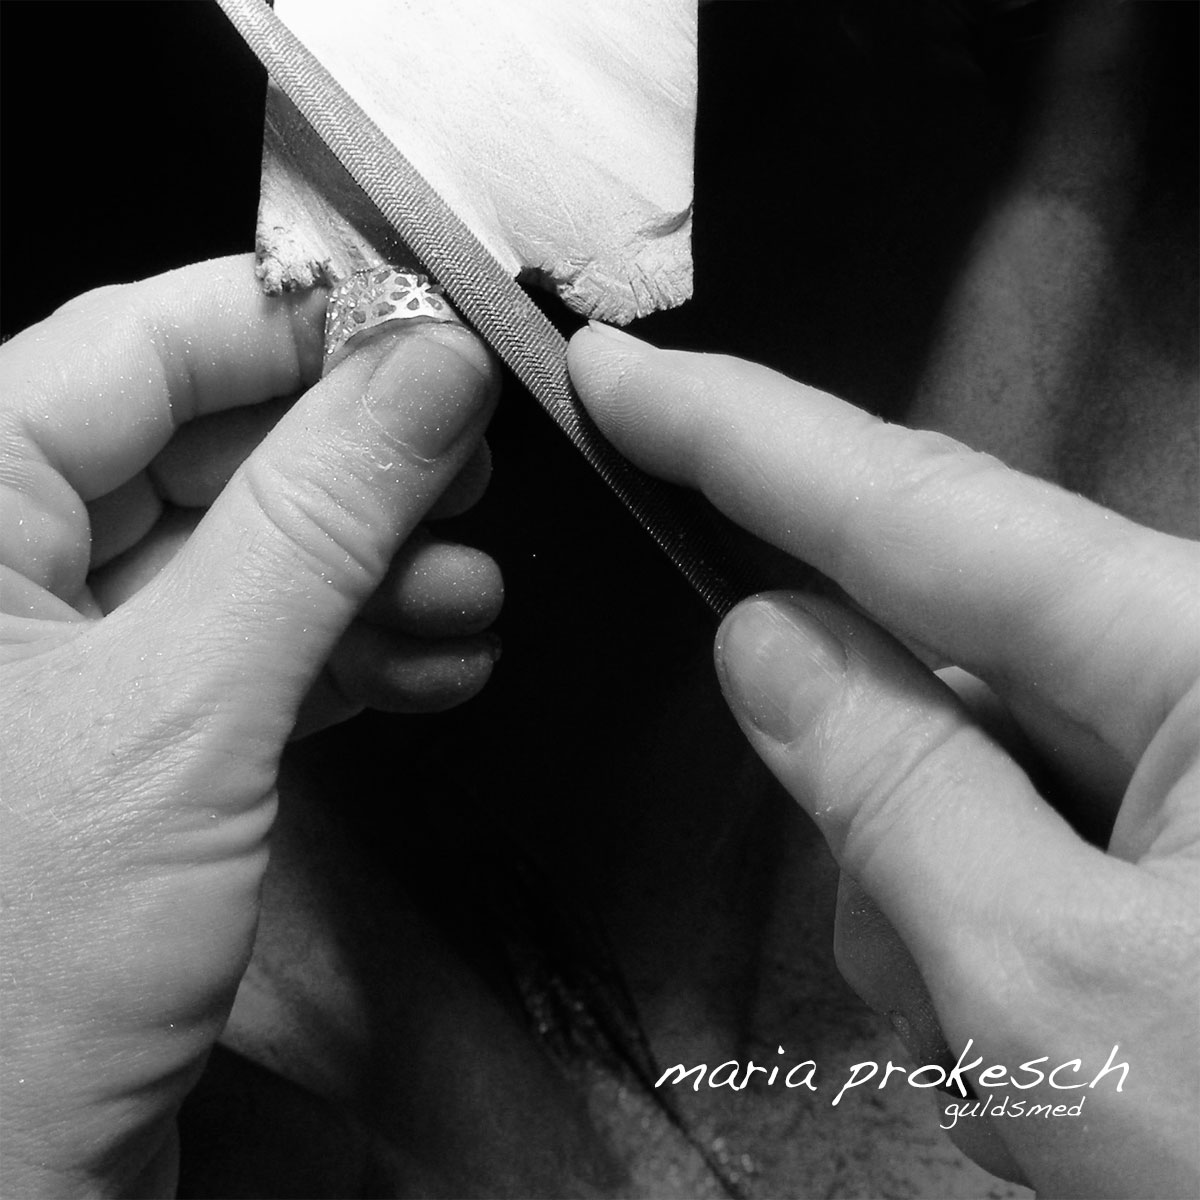 Smykkerne fra Maria er alle håndlavede. Vielsesringe laves efter bestilling, hvor parret har haft et møde med guldsmeden selv. Både dameringen og herreringen er et vigtigt valg til brylluppet.